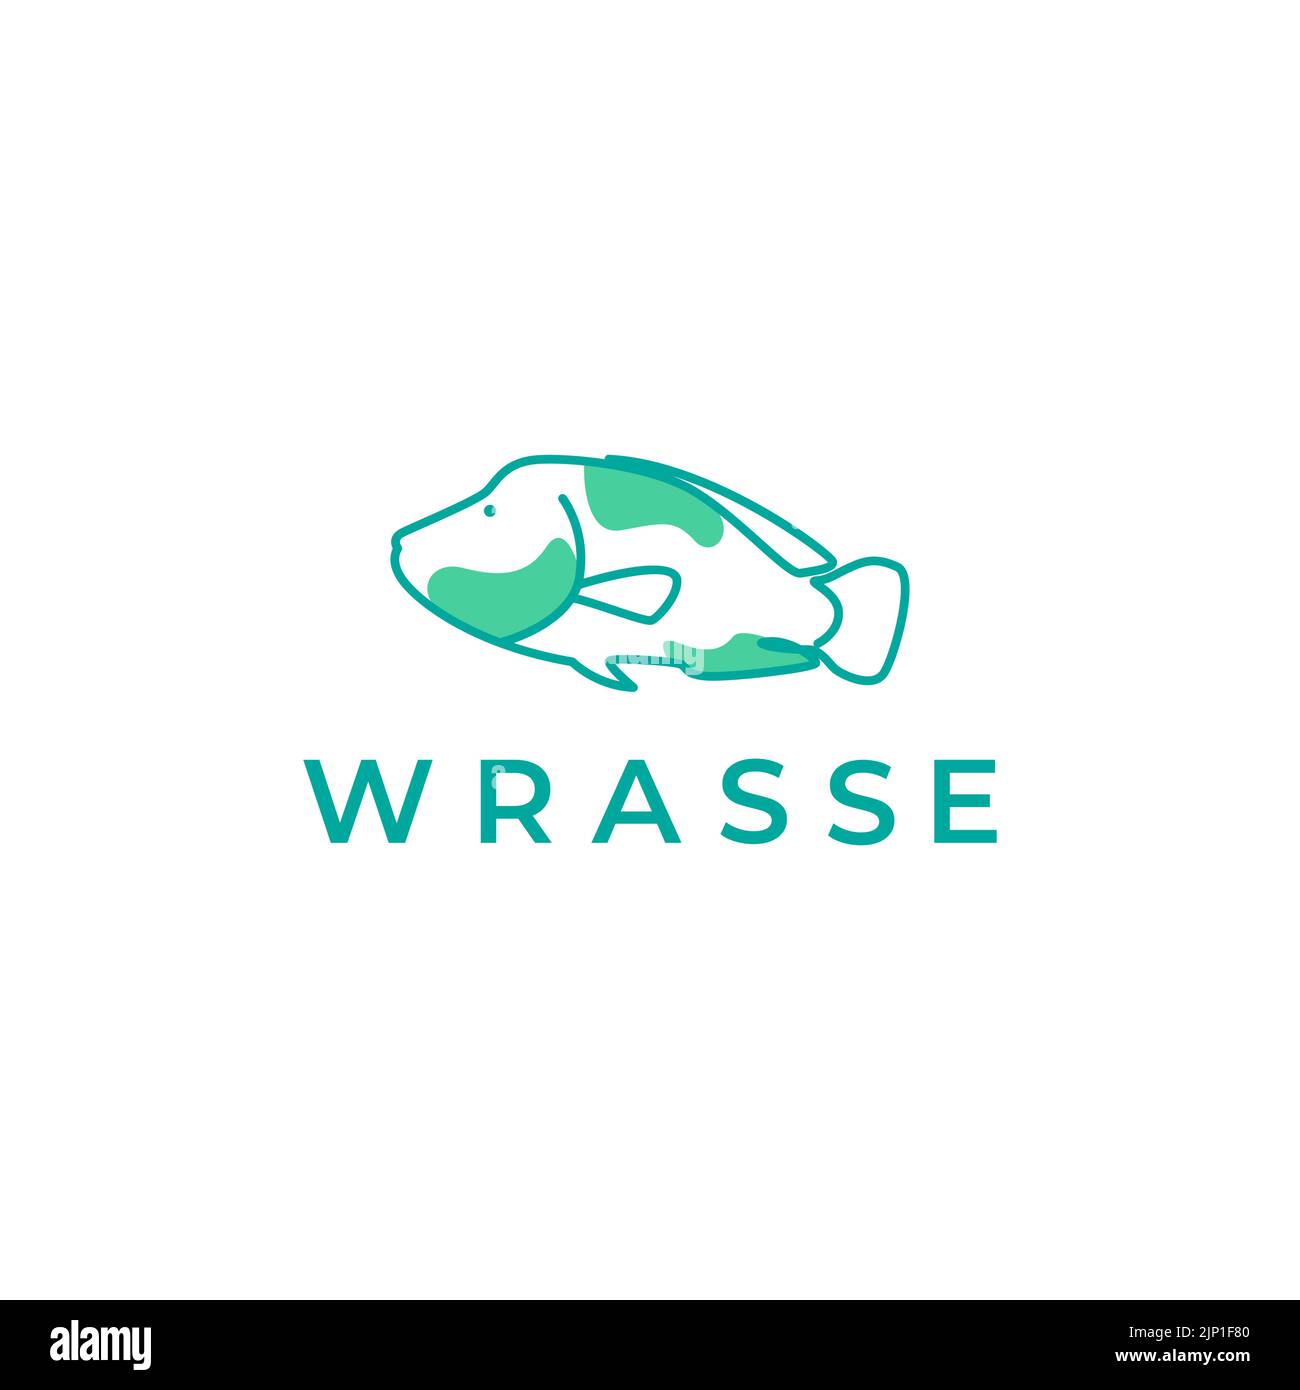 diseño abstracto del logo de los wrasses del pez Ilustración del Vector